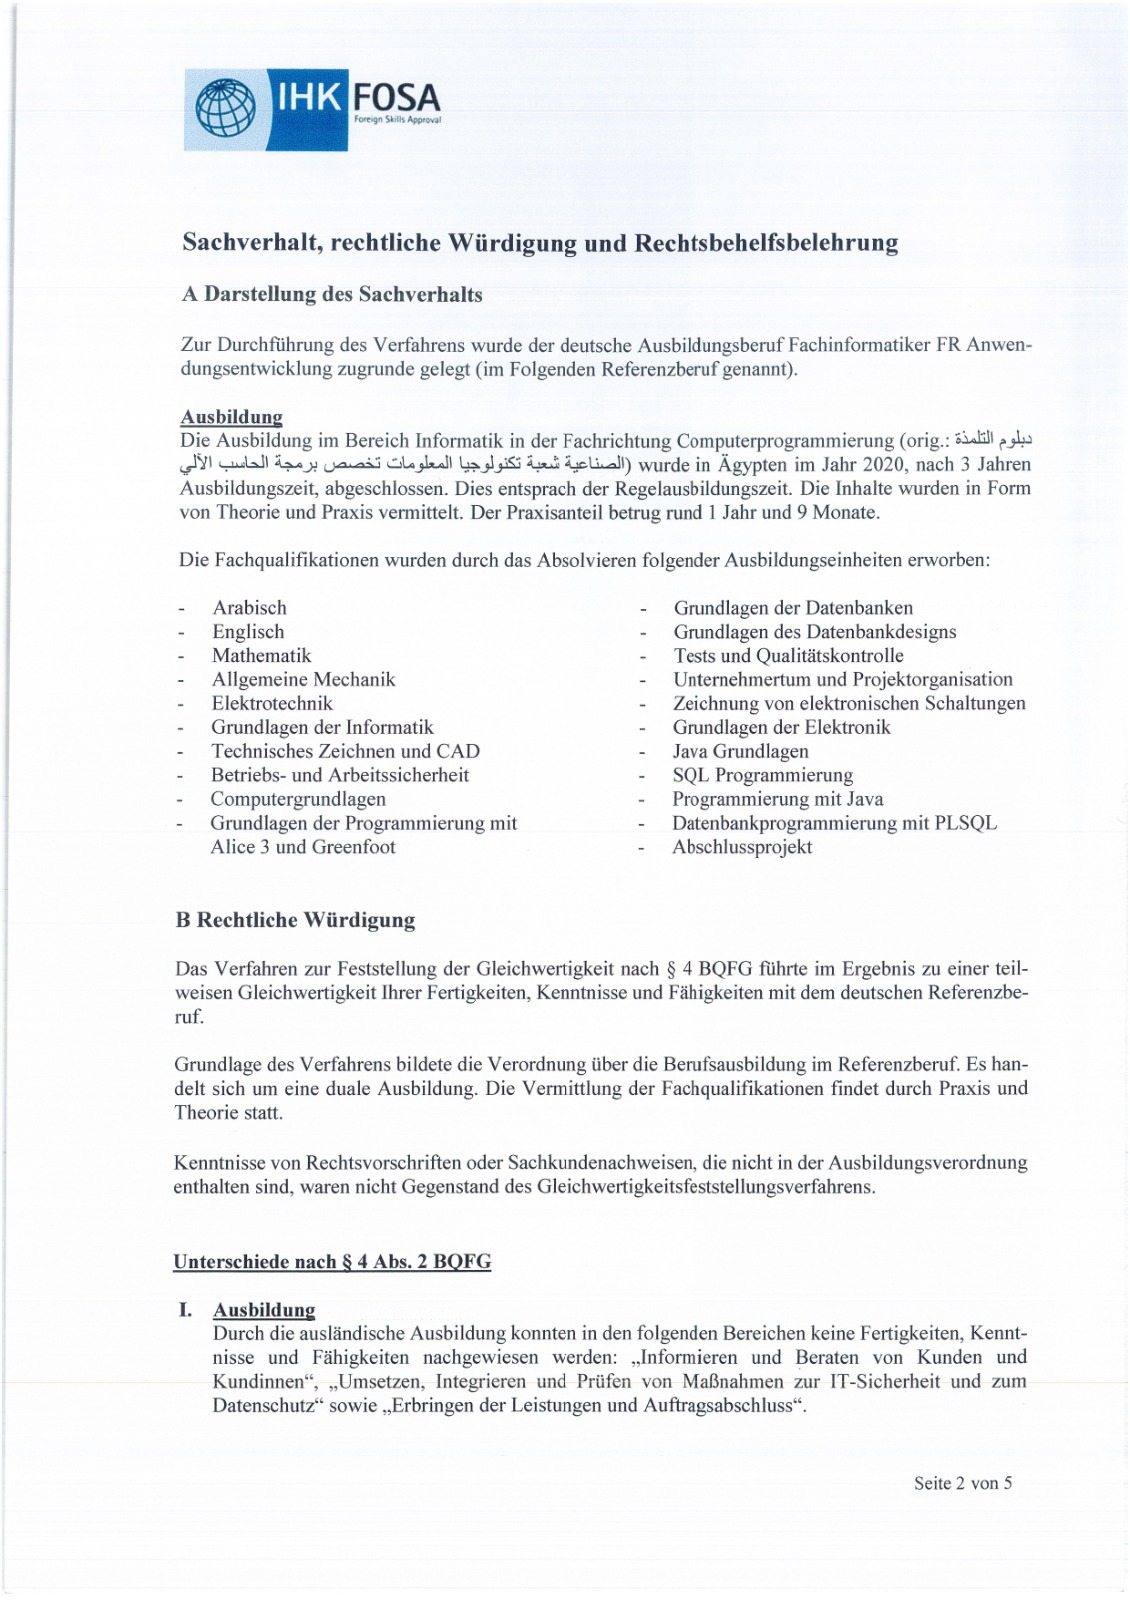 شهادة الاعتماد من ألمانيا  وموضح بها باللغة العربية مسمى دبلومة التلمذة الصناعية